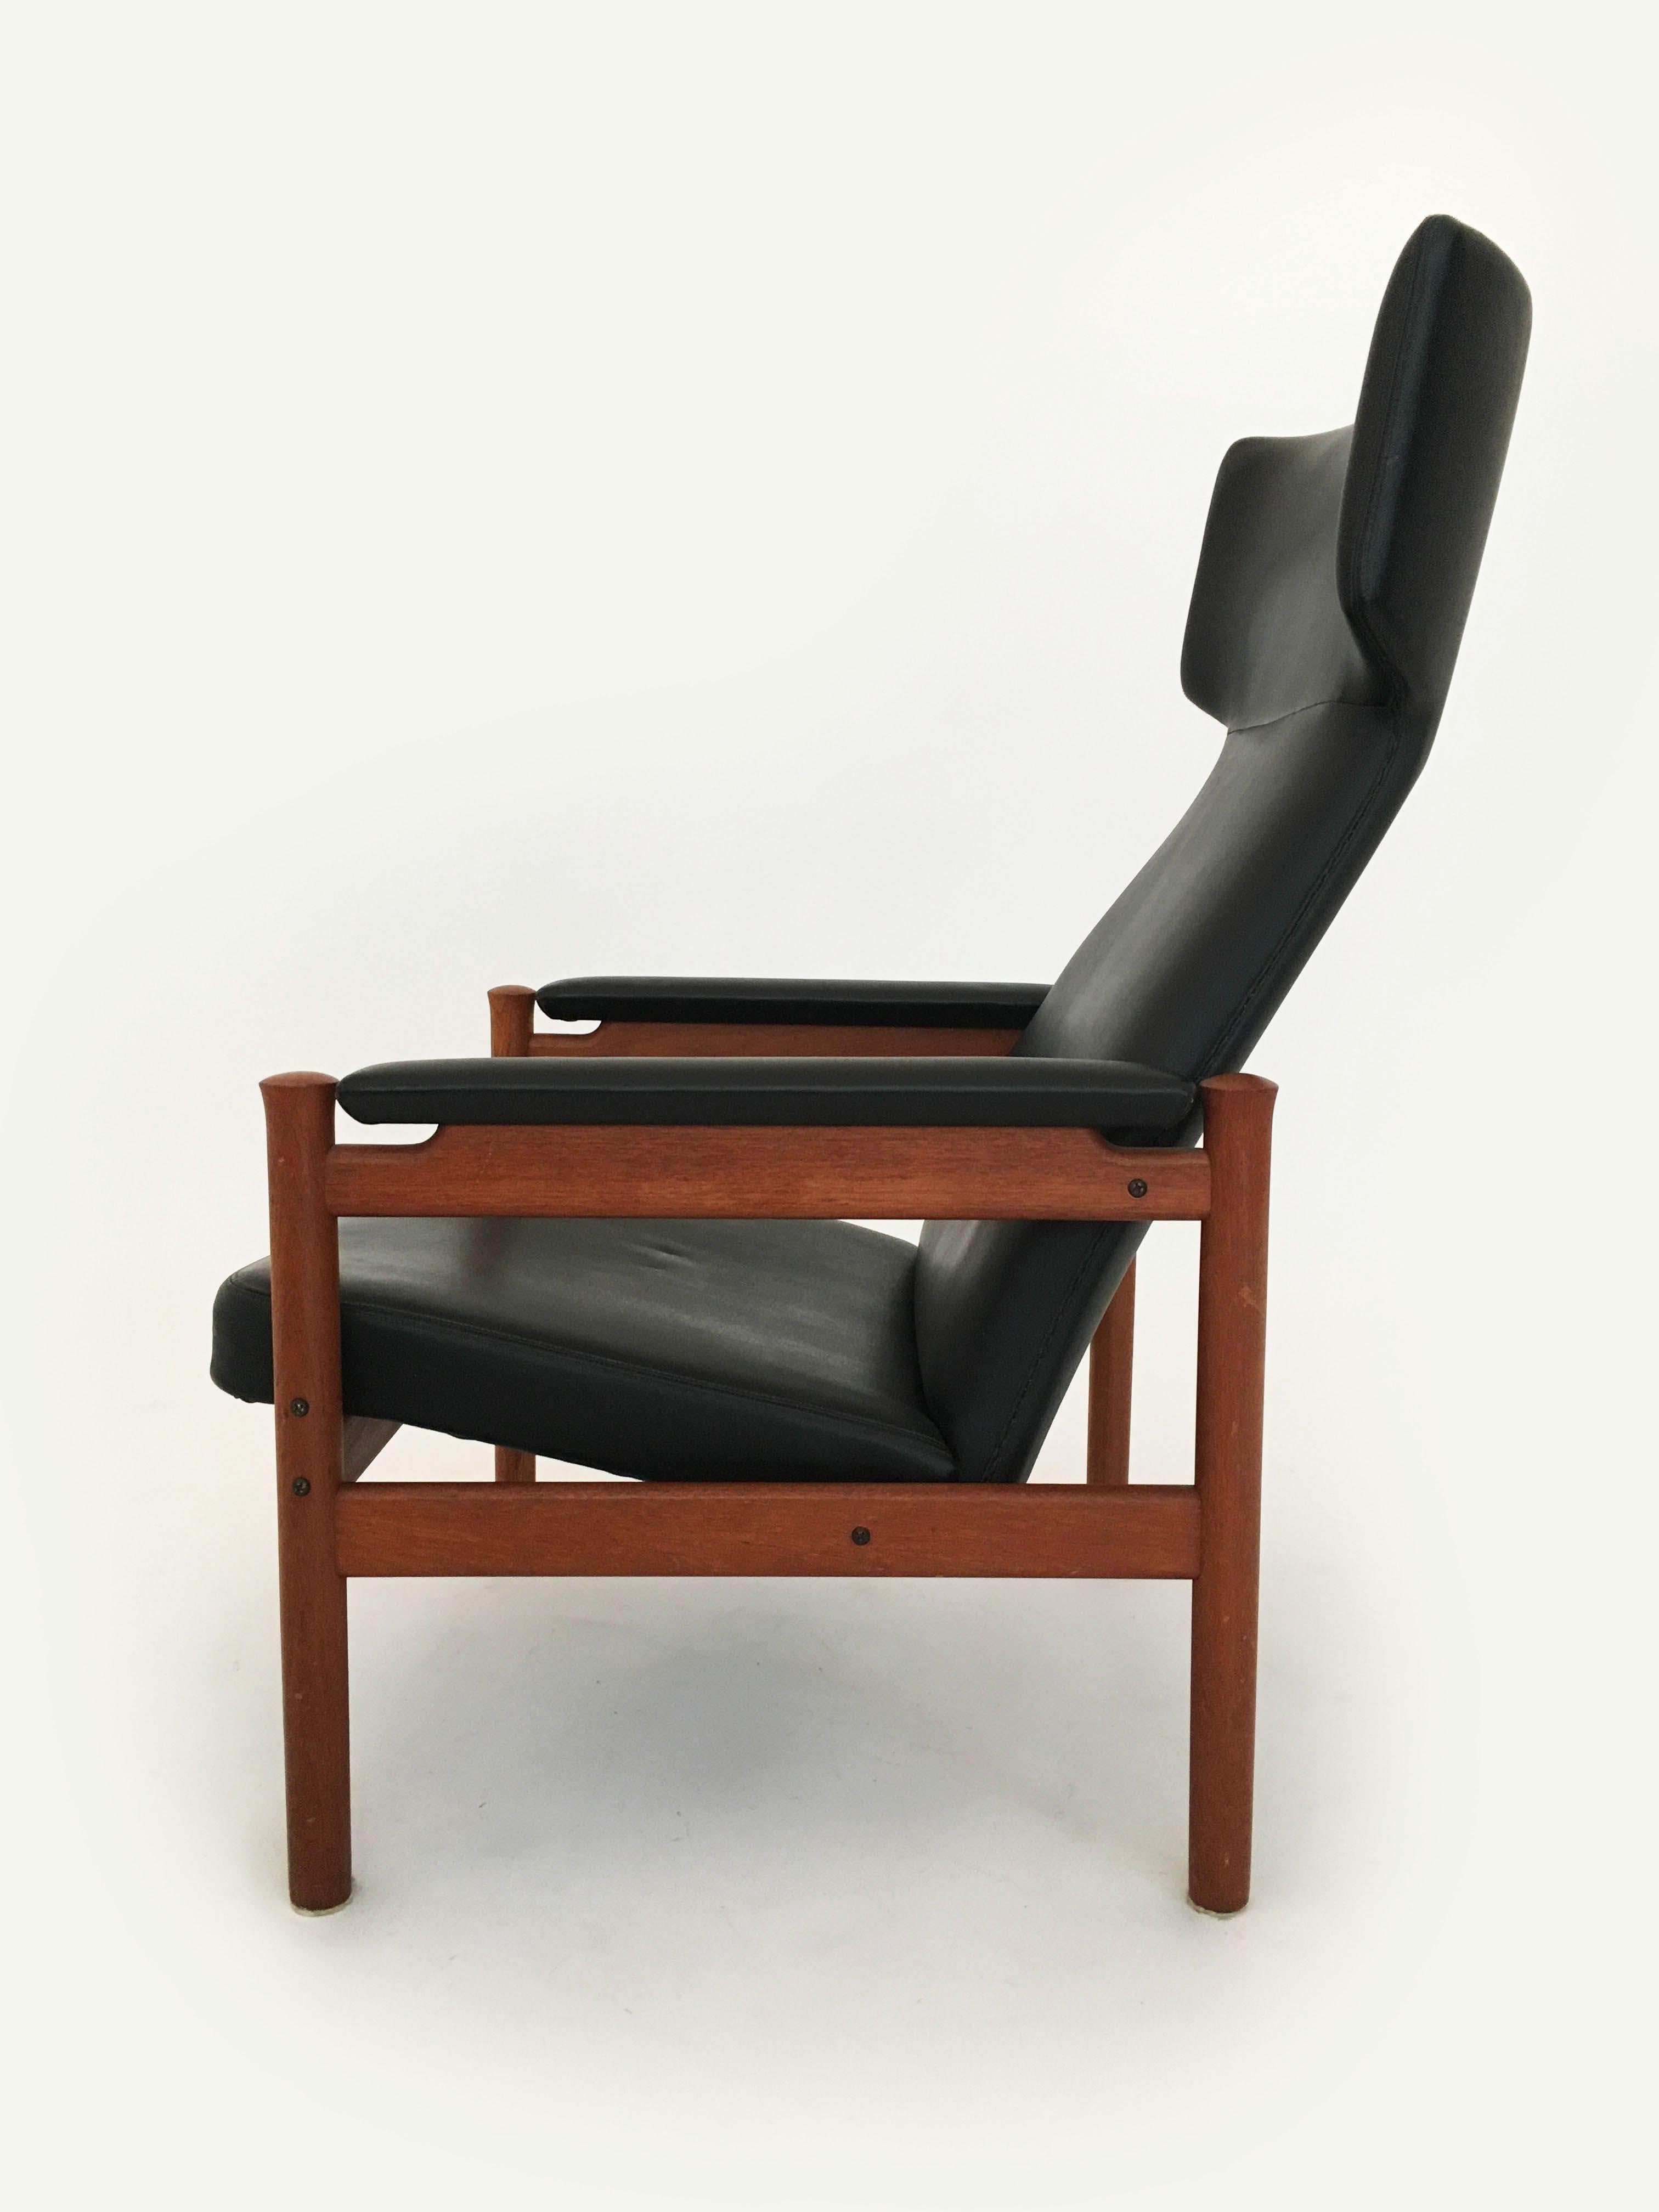 Fabric Scandinavian Modern Wing Chair and Ottoman by Soren Hansen for Fritz Hansen 1963 For Sale